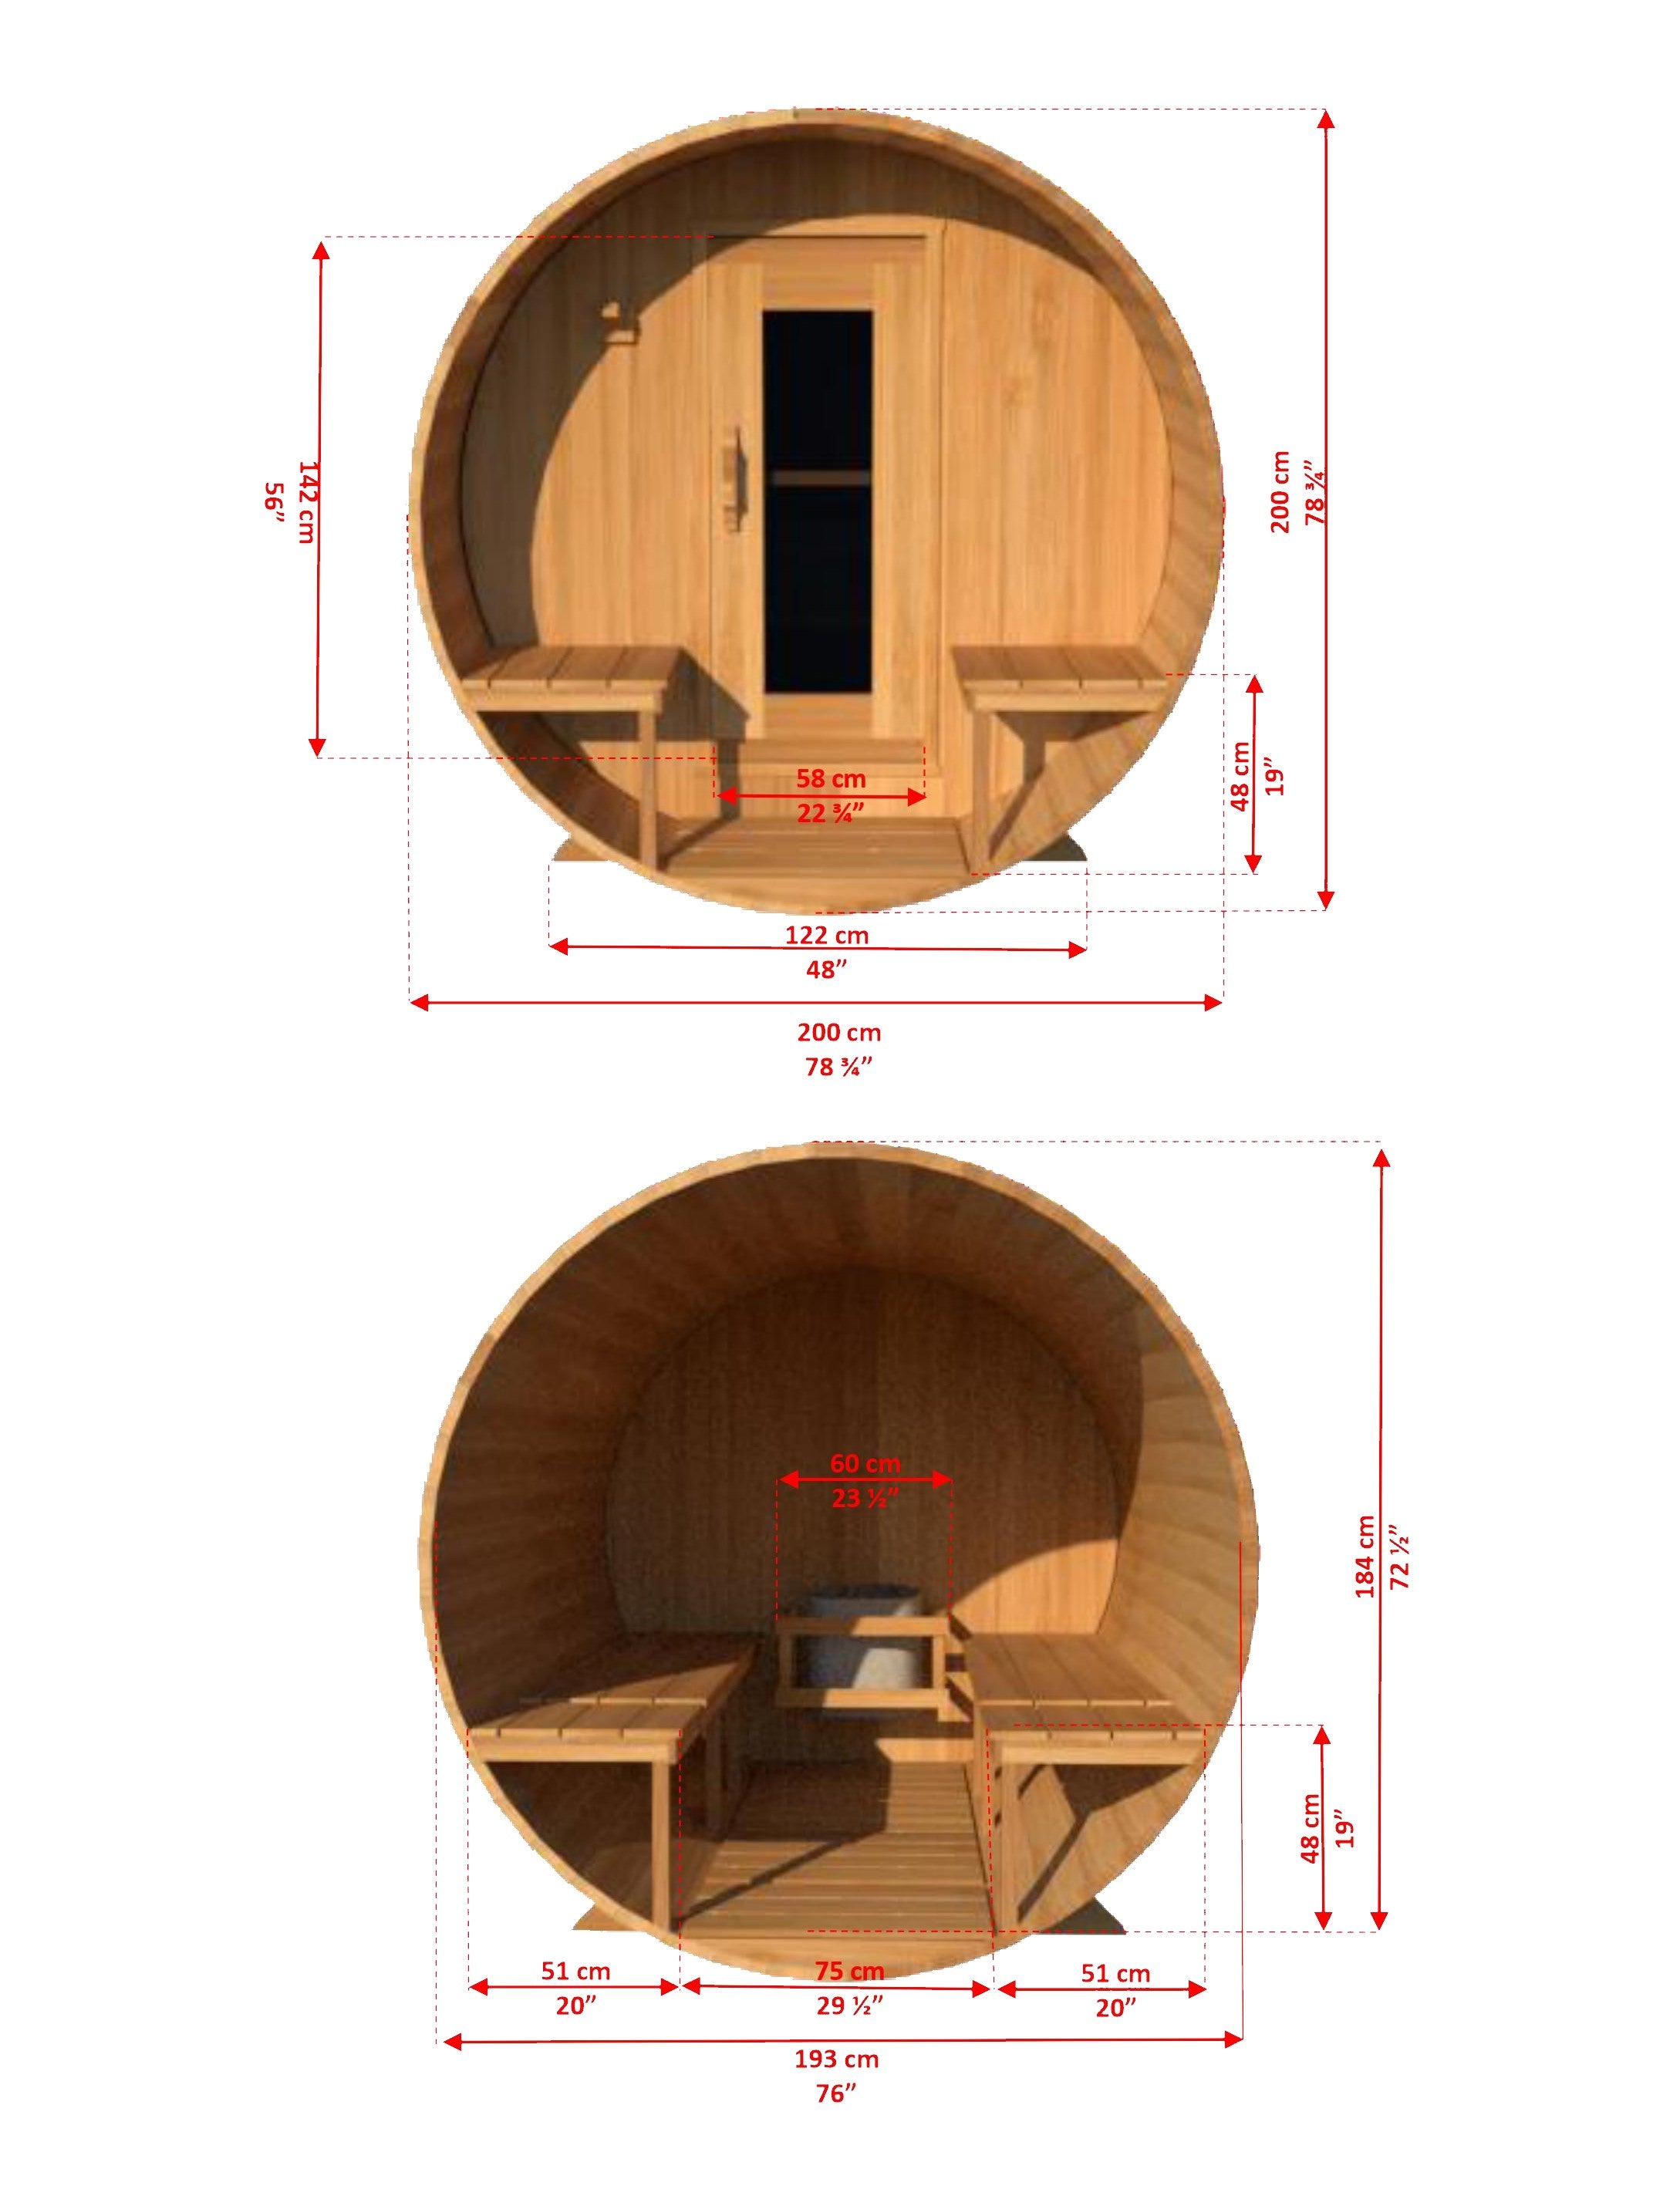 Dundalk Leisurecraft CT Serenity 2-4 Person Barrel Sauna